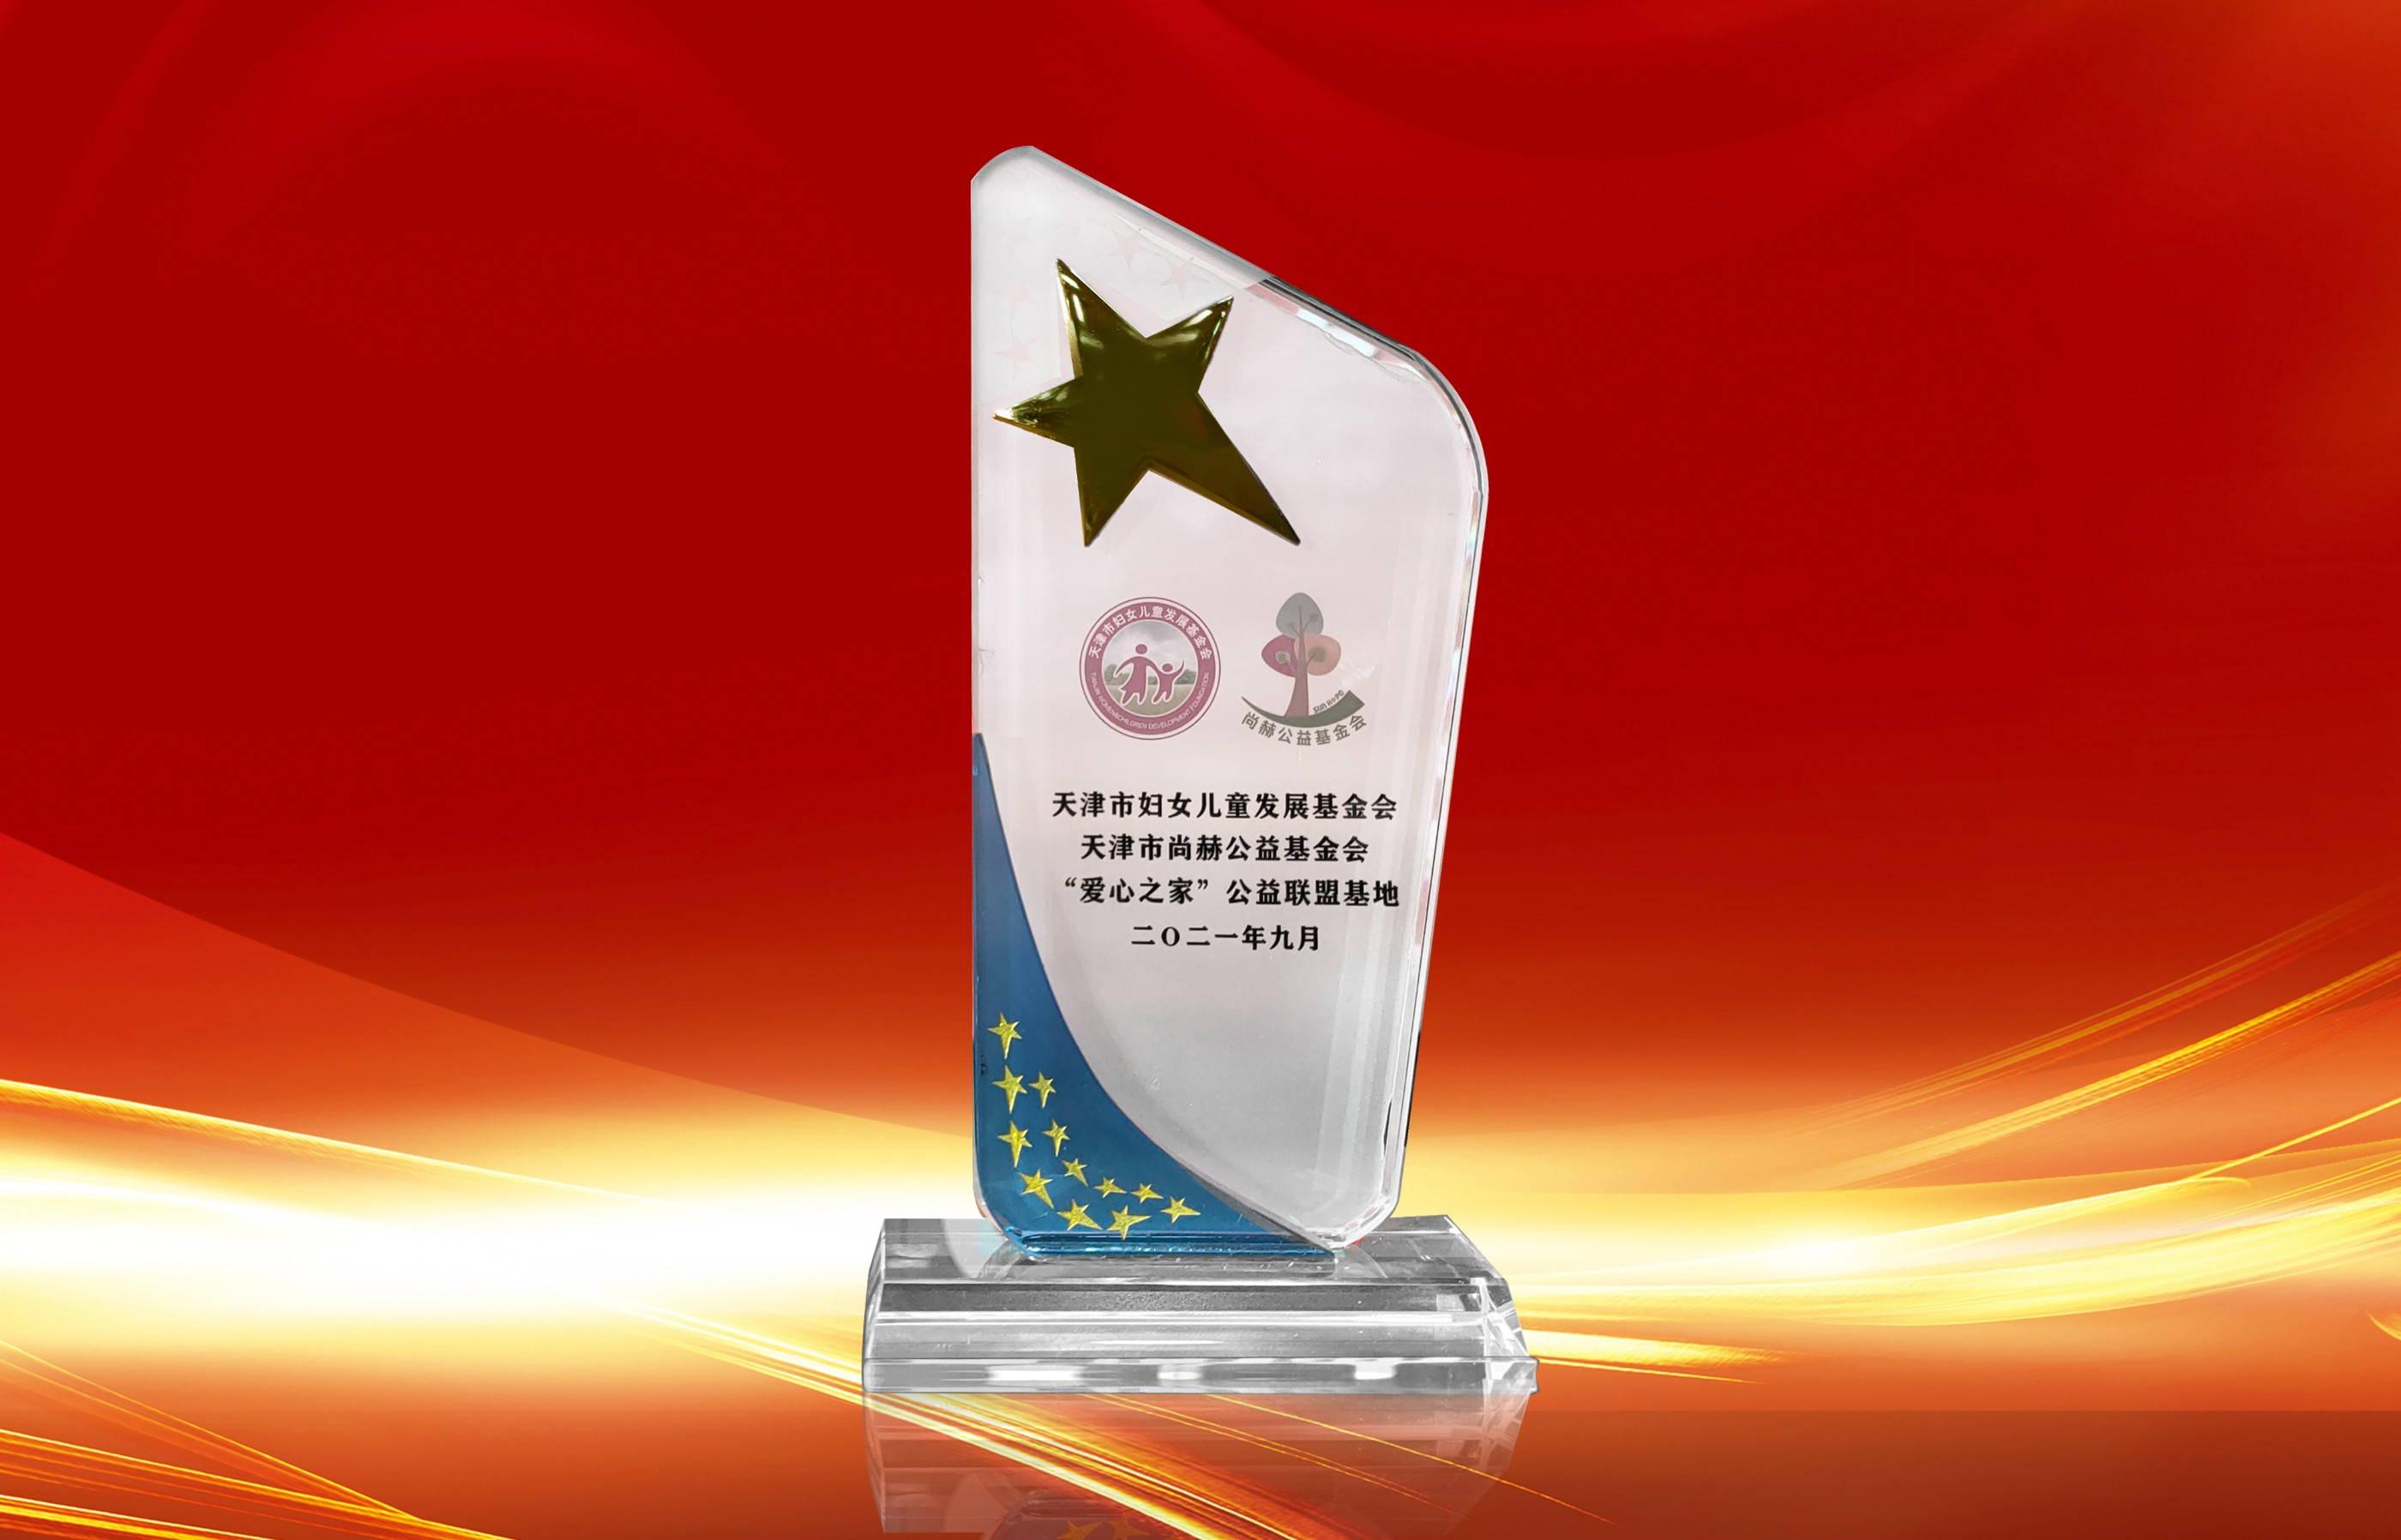 2021年9月-皇家体育(中国)有限责任公司公司荣获-天津市妇女联合会-“爱心之家”公益联盟基地奖杯